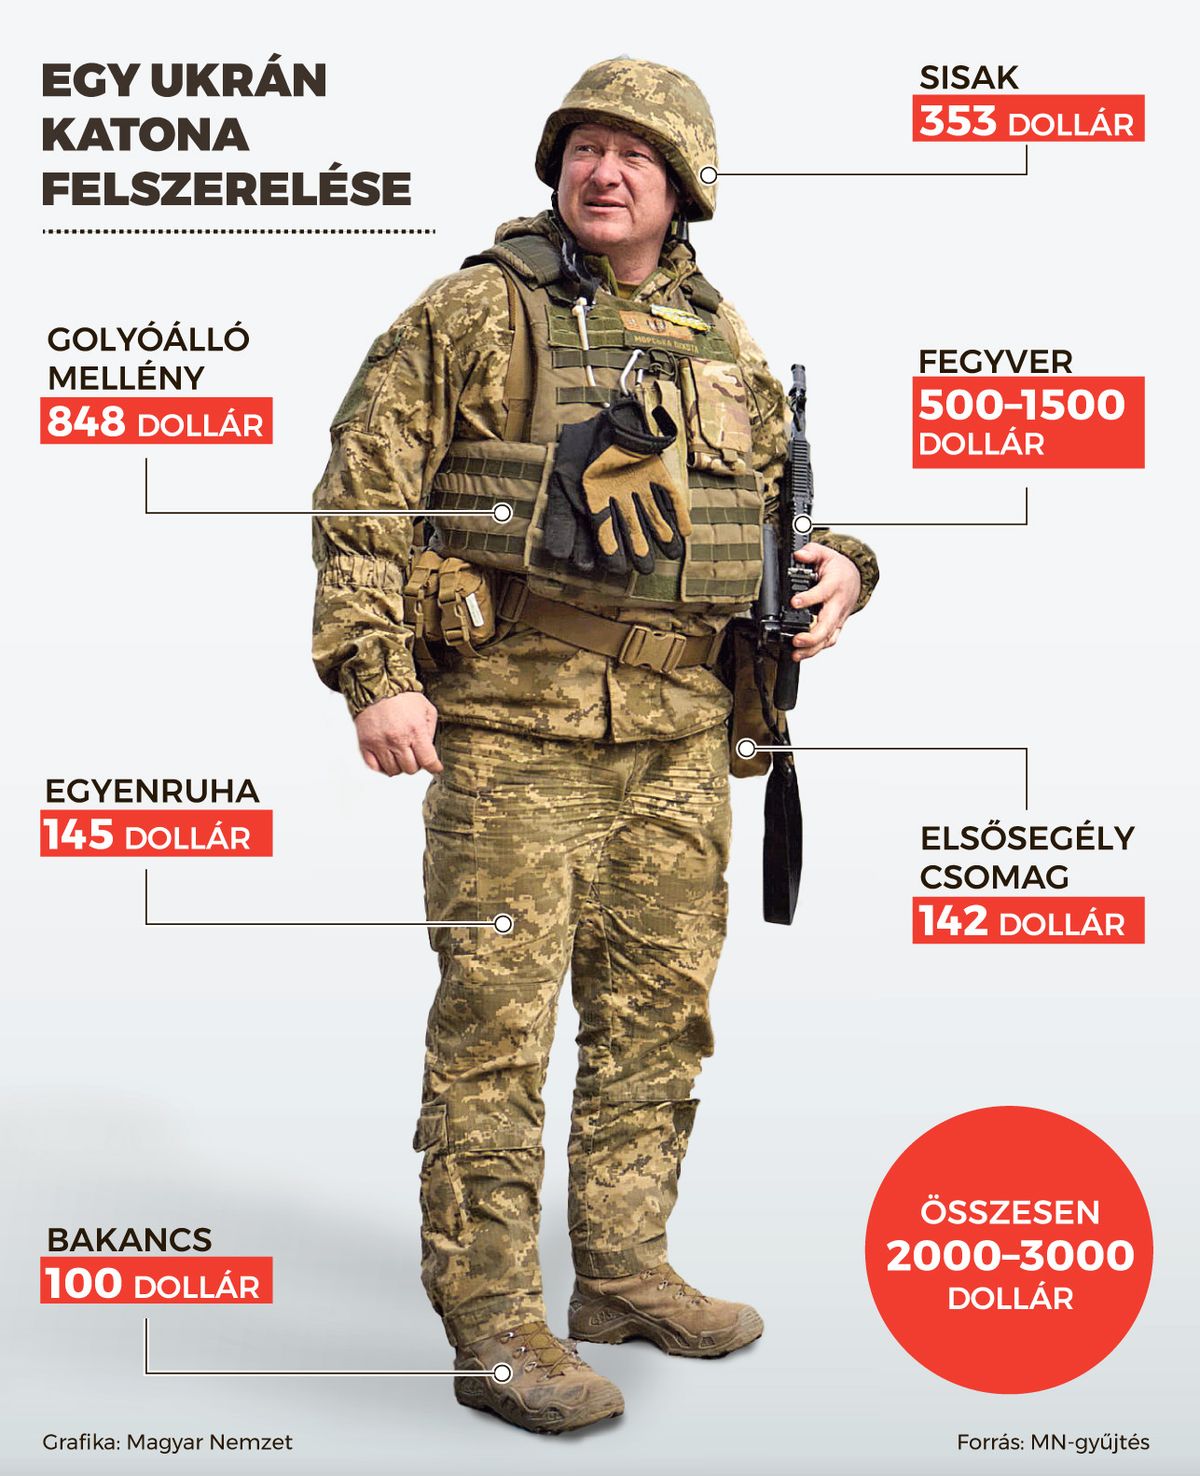 Ukrán katona felszerelésének az ára.